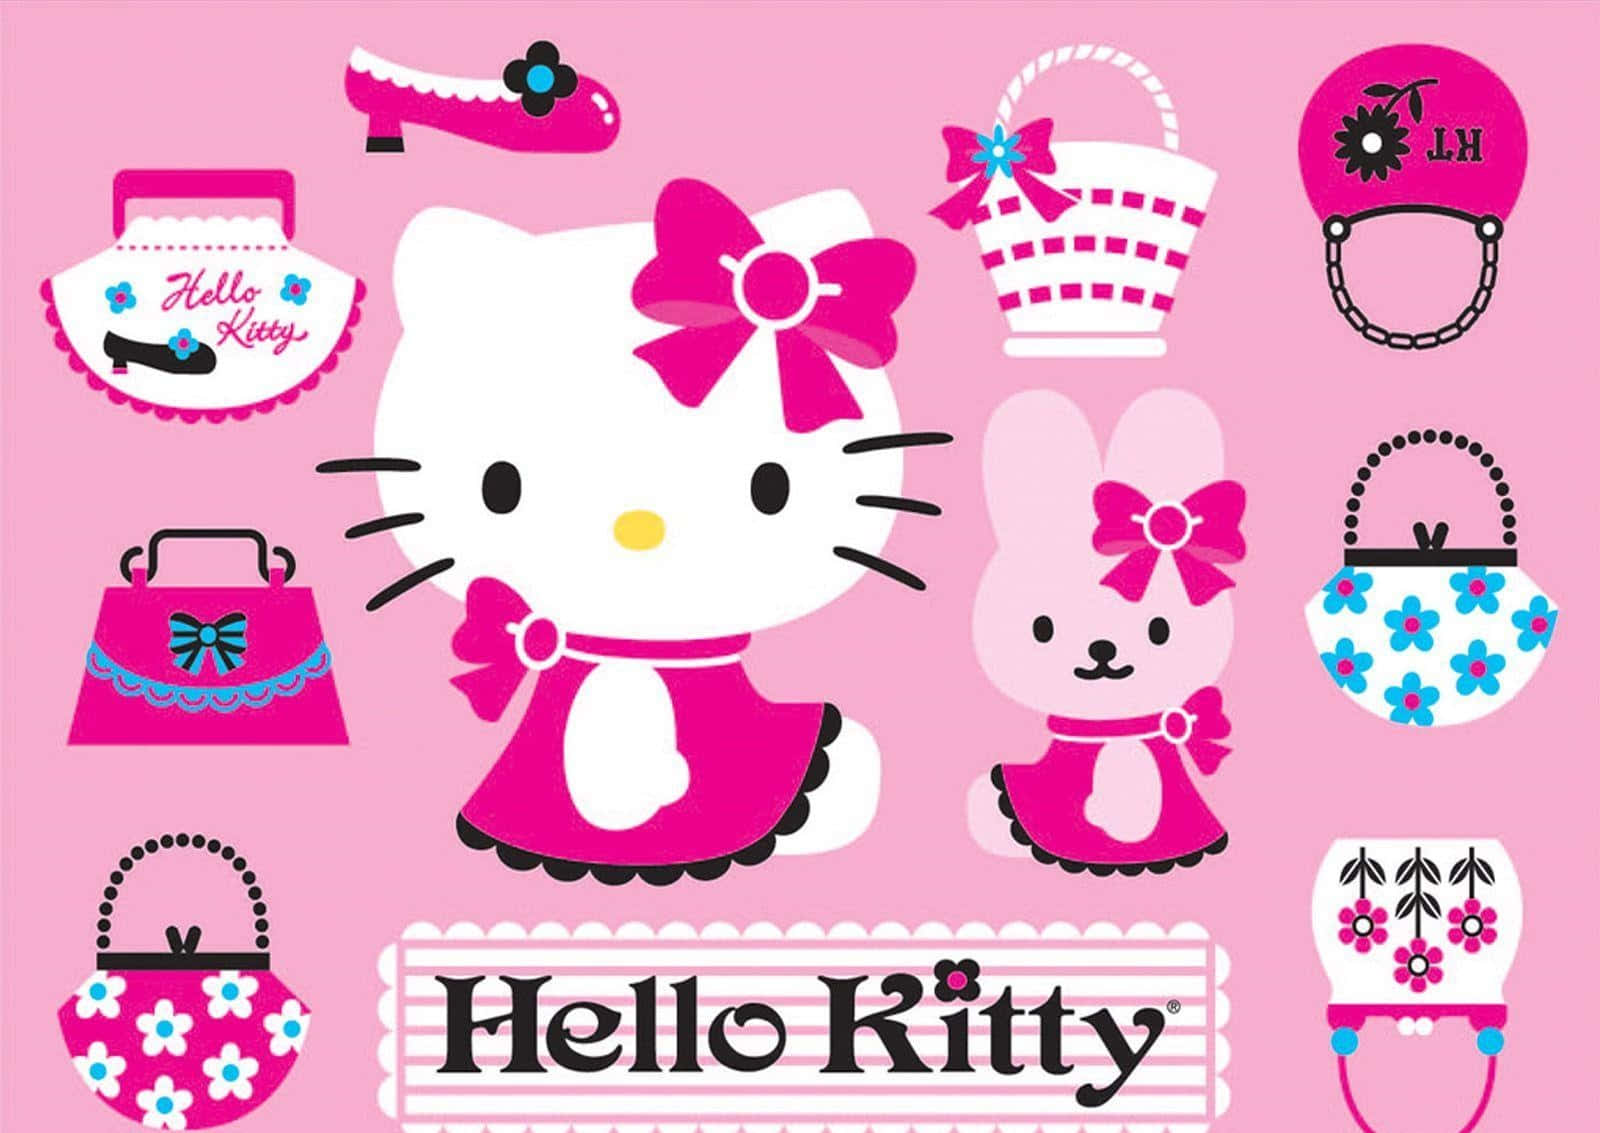 Hello Kitty laptop hand bags wallpaper: Sự kết hợp hoàn hảo giữa thế giới xinh đẹp của Hello Kitty và tính di động của máy tính xách tay, hình ảnh những chiếc túi đeo tay được chào đón bởi các tín đồ thời trang trên toàn thế giới. 